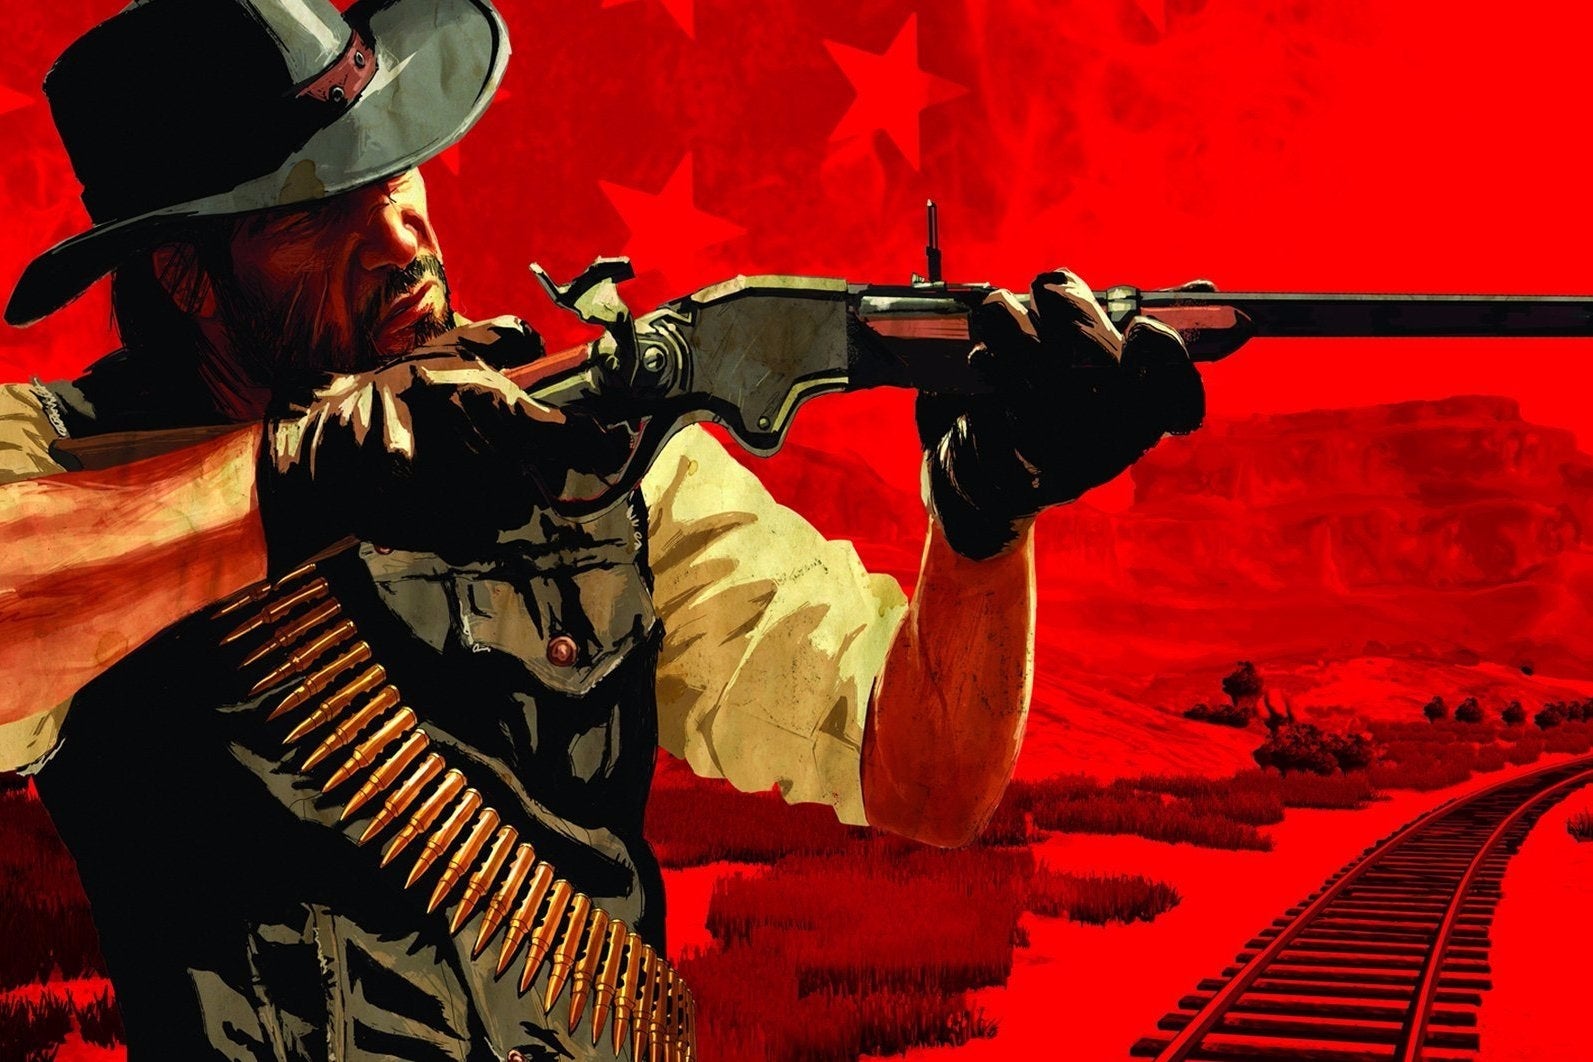 Immagine di Red Dead Redemption continua a restare al primo posto nel sondaggio sulla retrocompatibilità di Microsoft